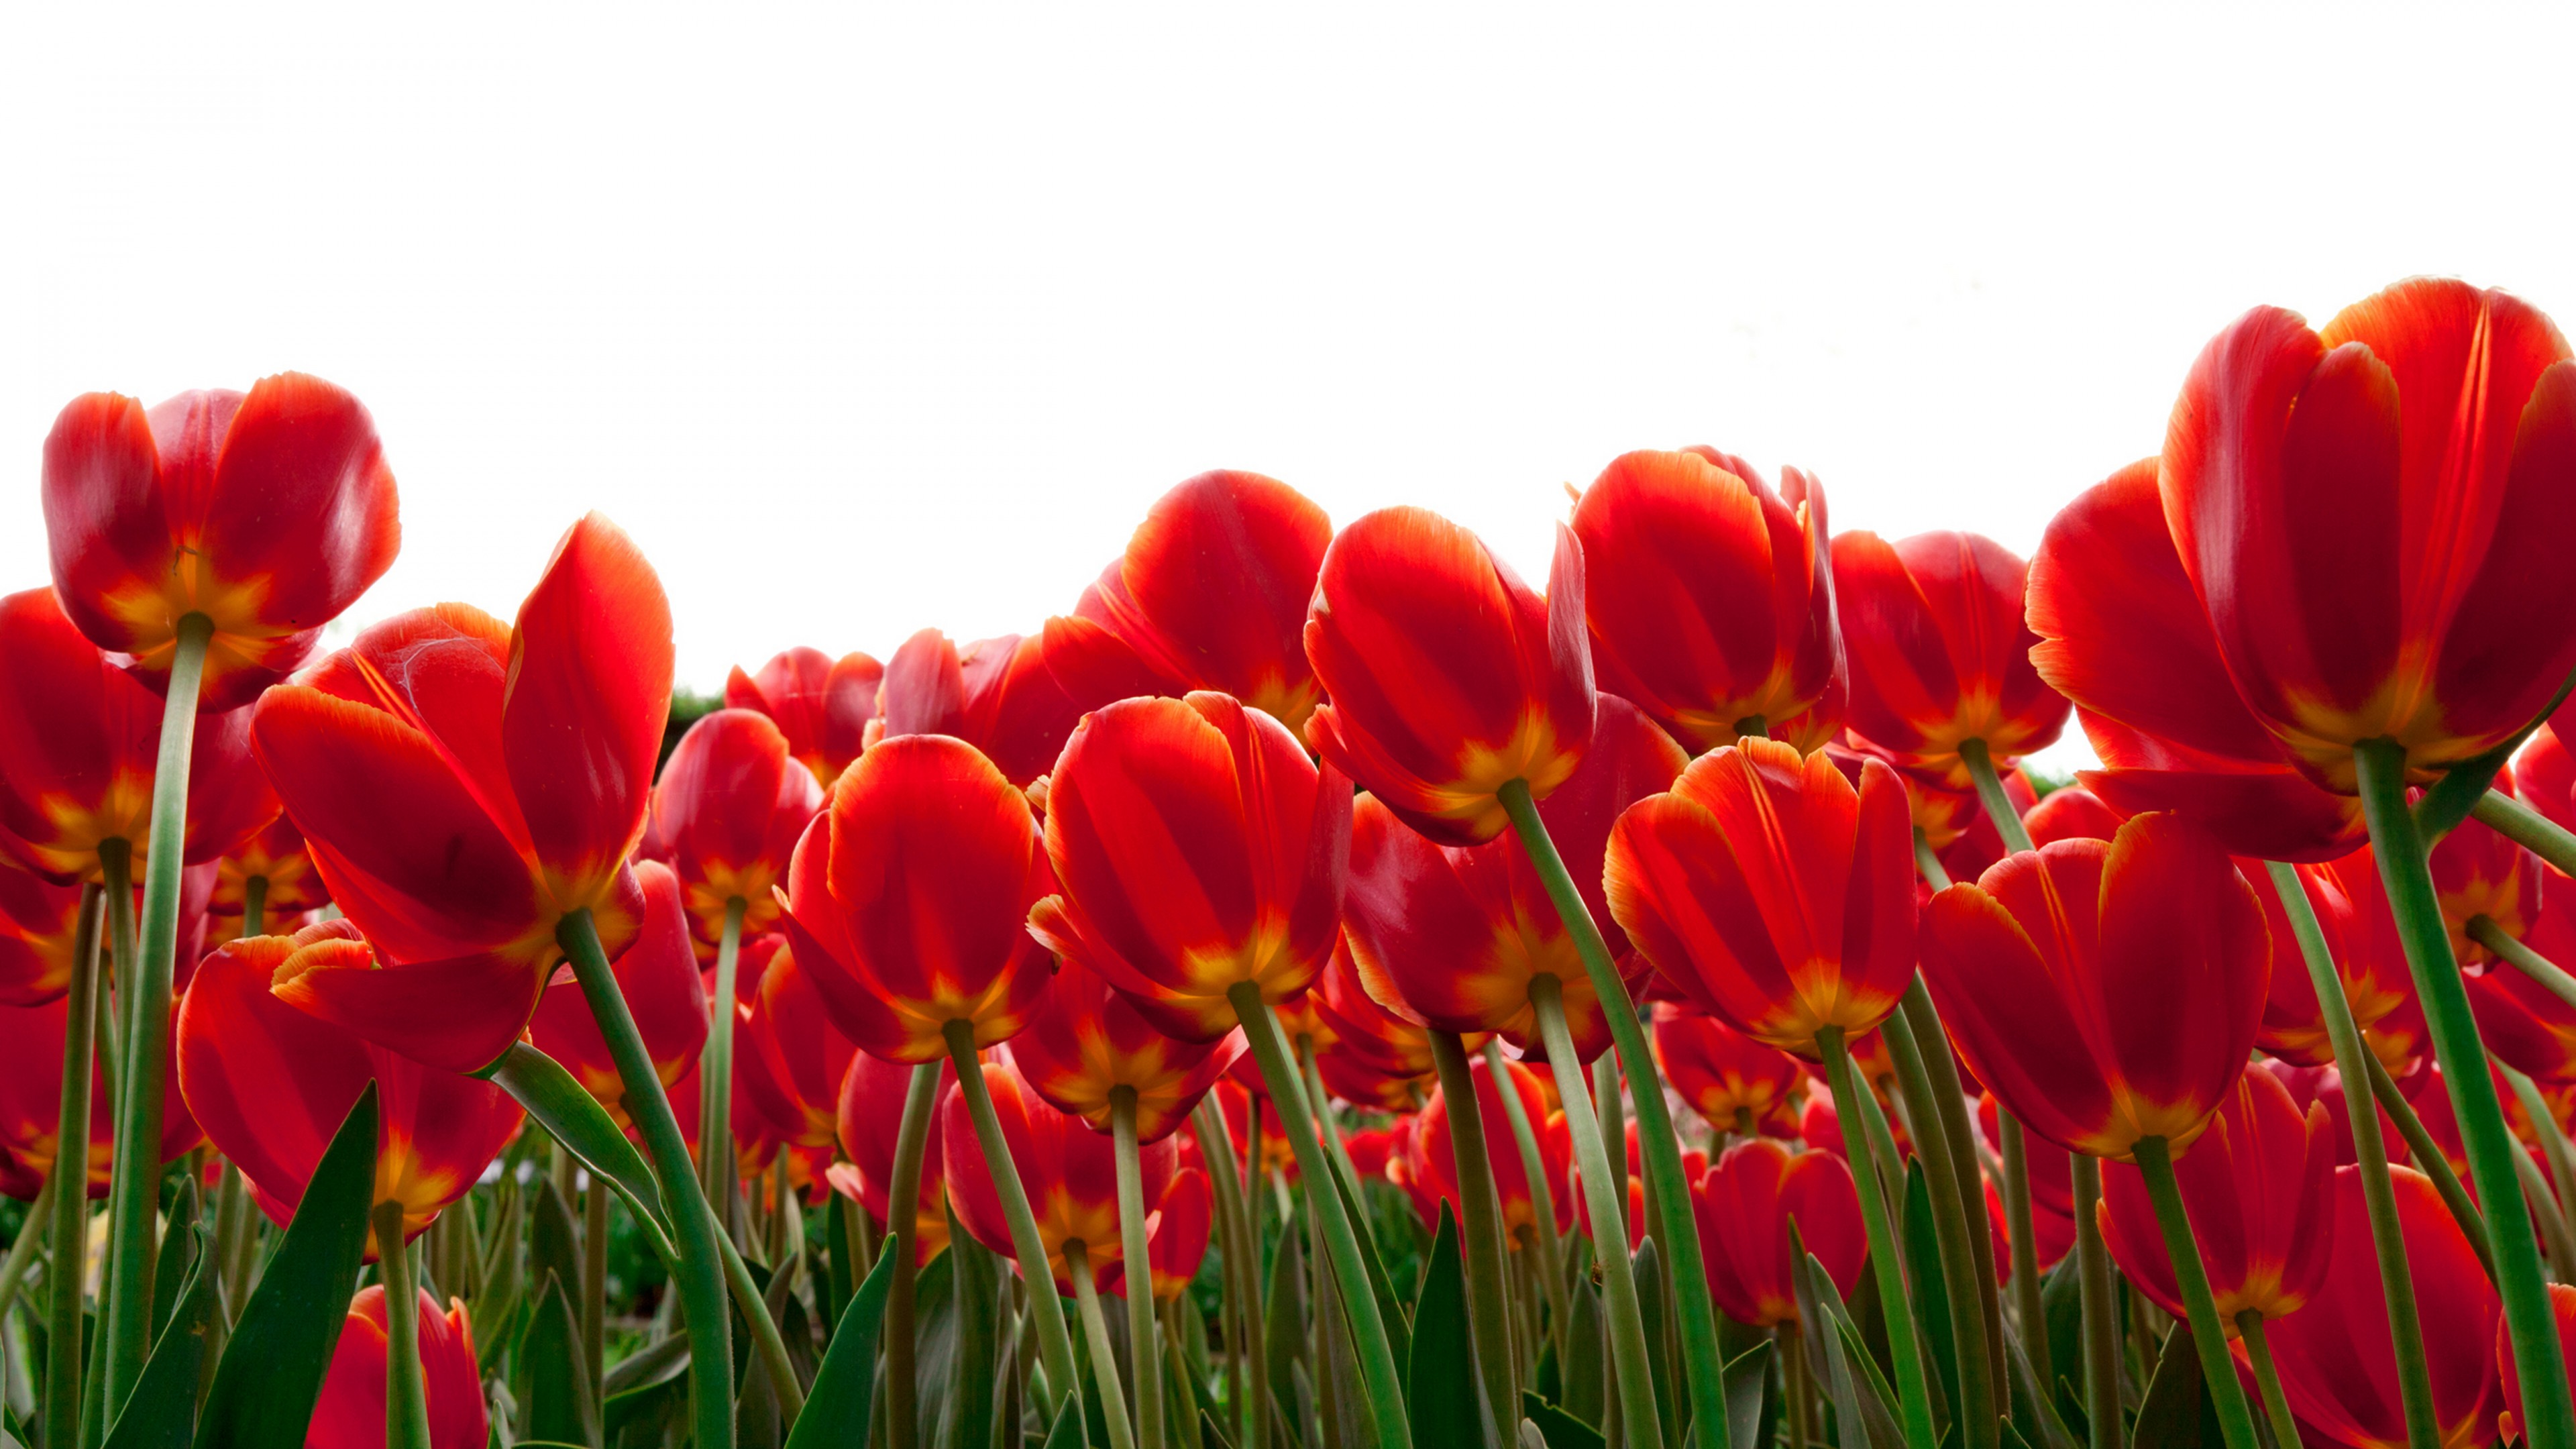 Wallpaper Tulips, Red flowers, HD, 4K, Flowers, #5534